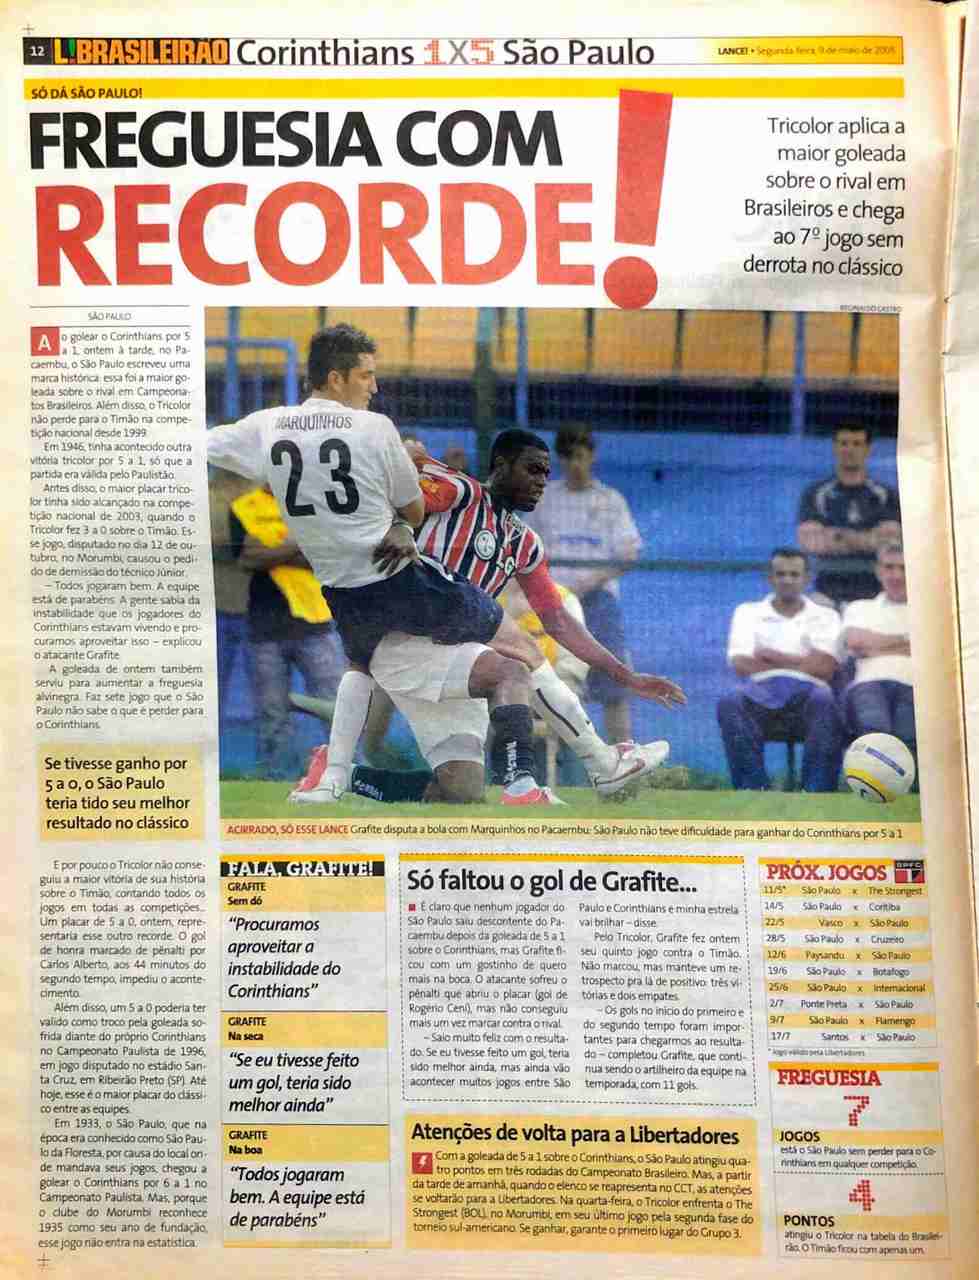 Àquela altura, o São Paulo ostentava sete jogos de invencibilidade contra o Corinthians, além de ter registrado a maior goleada da história dos Majetosos em Brasileiros. 